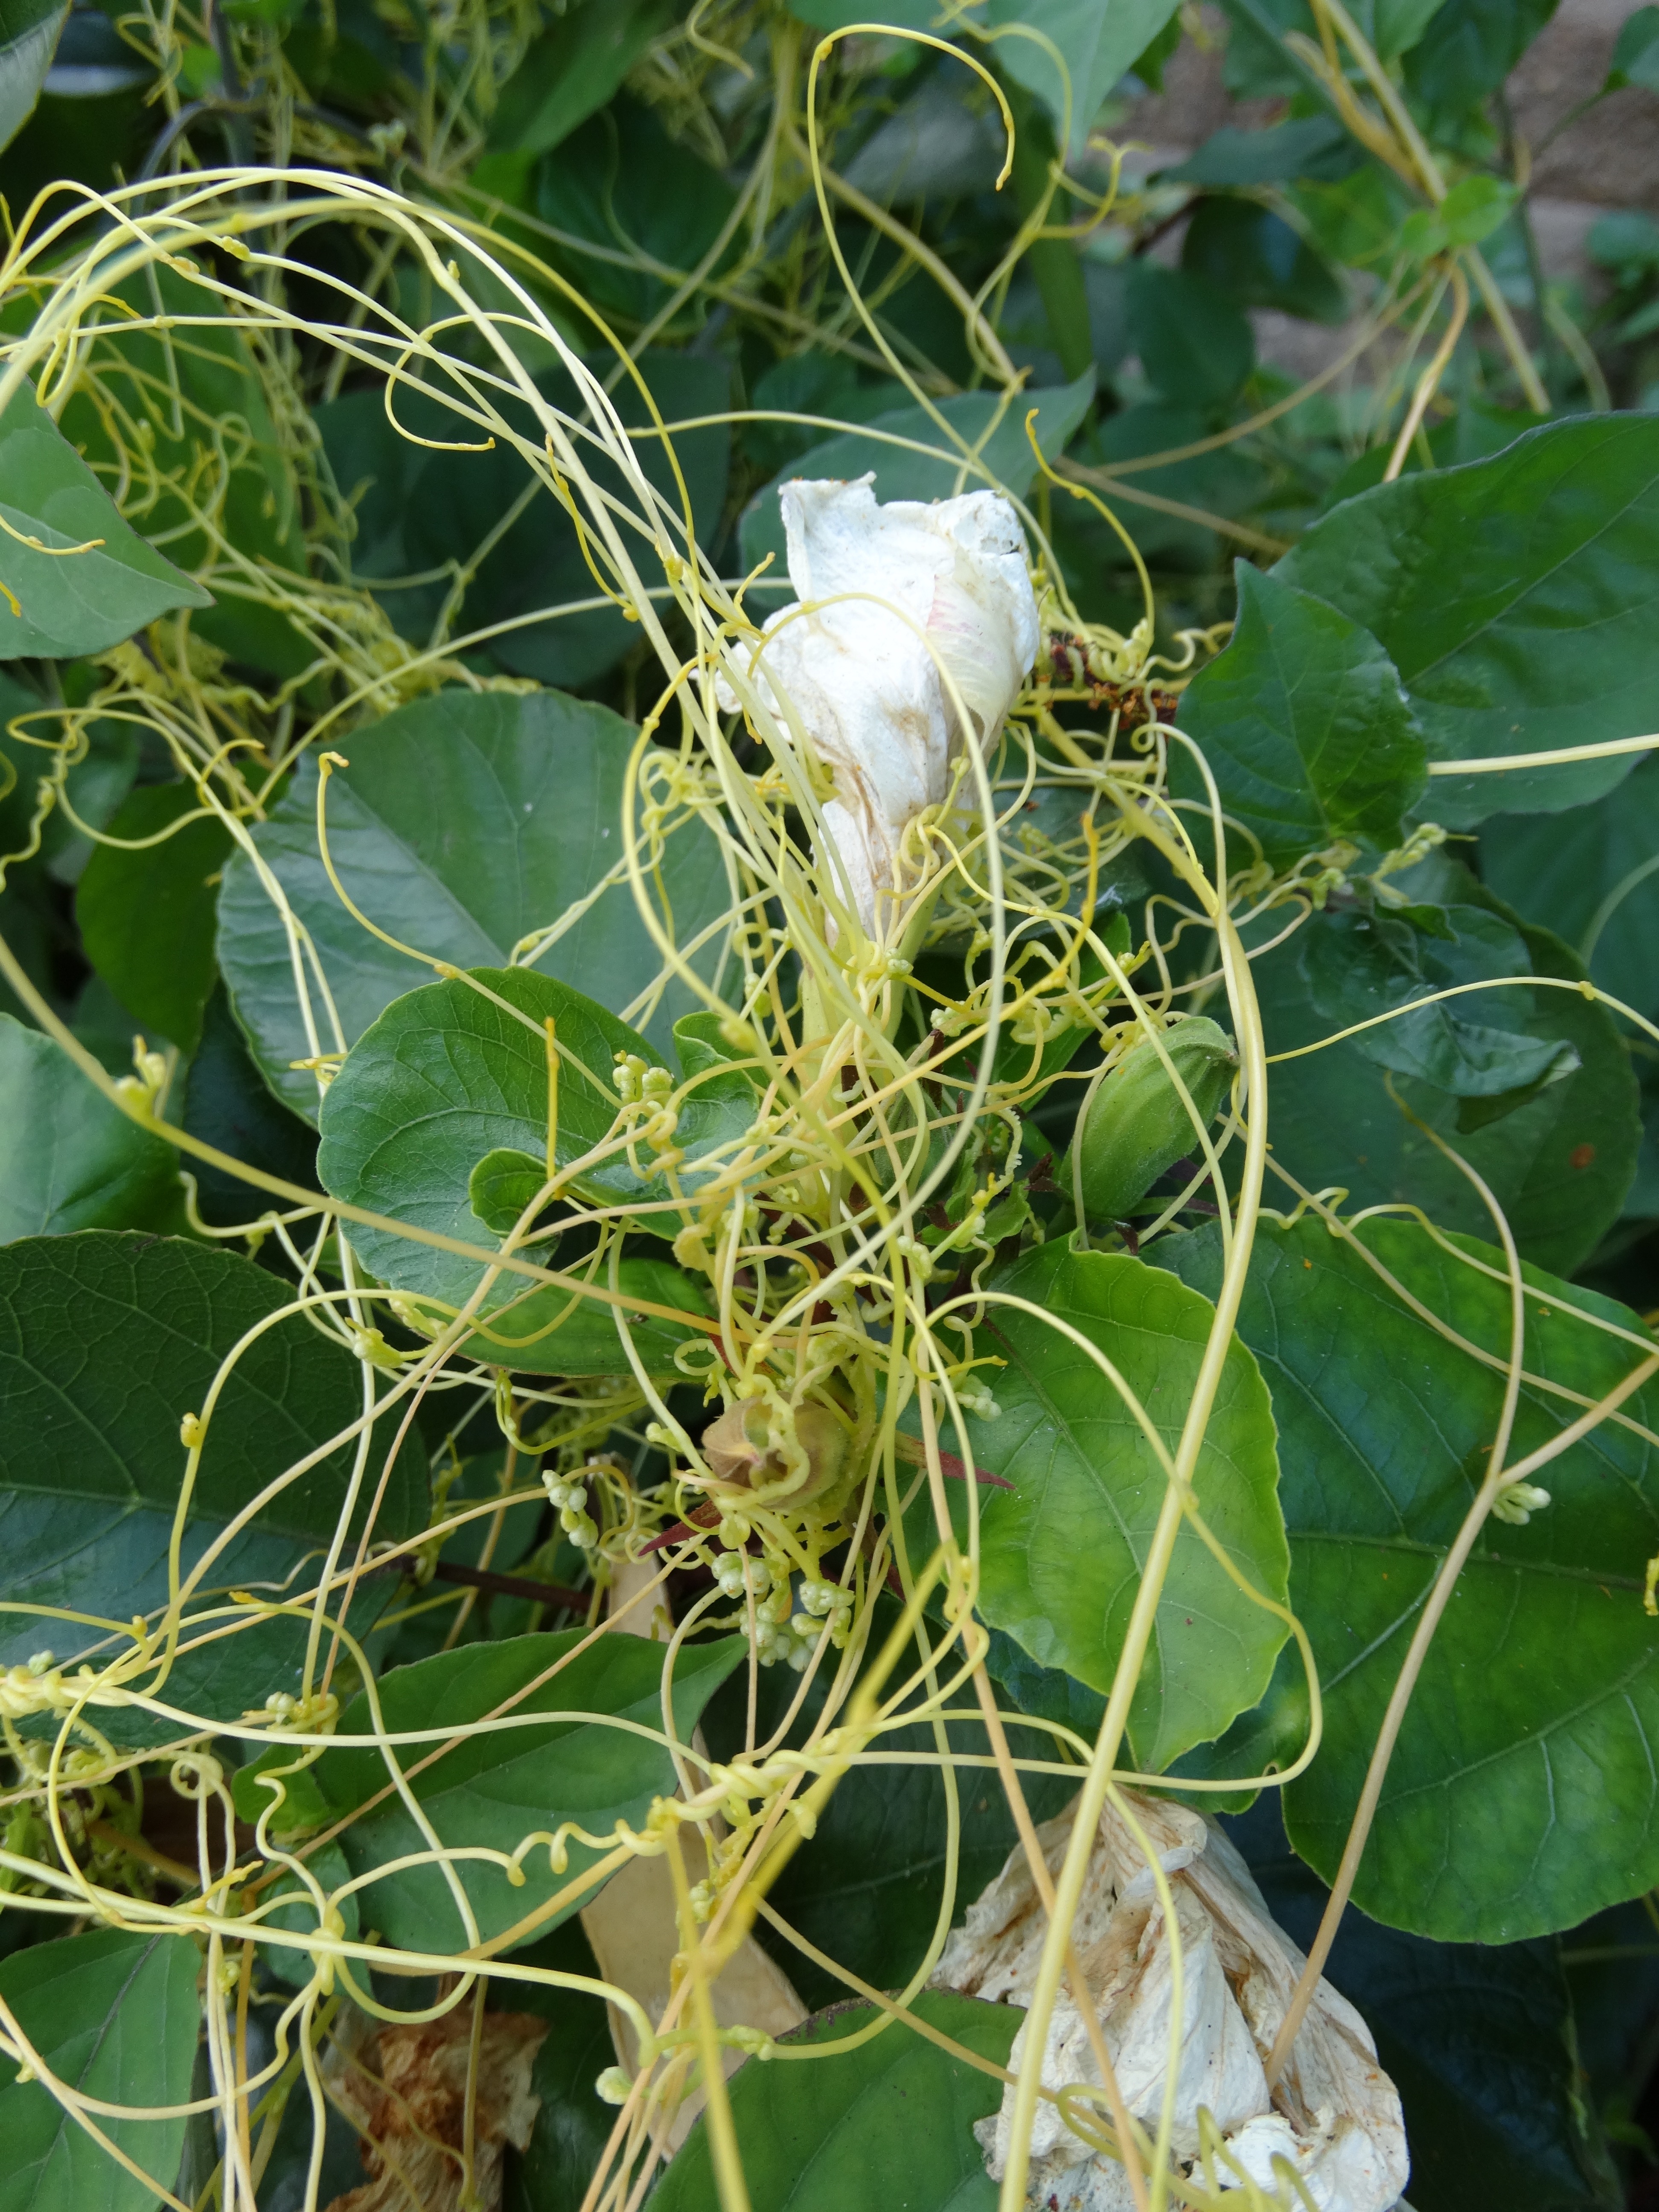 Dodder en su planta hospedadora, hibisco blanco. Dodder tiene tallos de color amarillo verdoso claro y se envuelve alrededor del huésped.